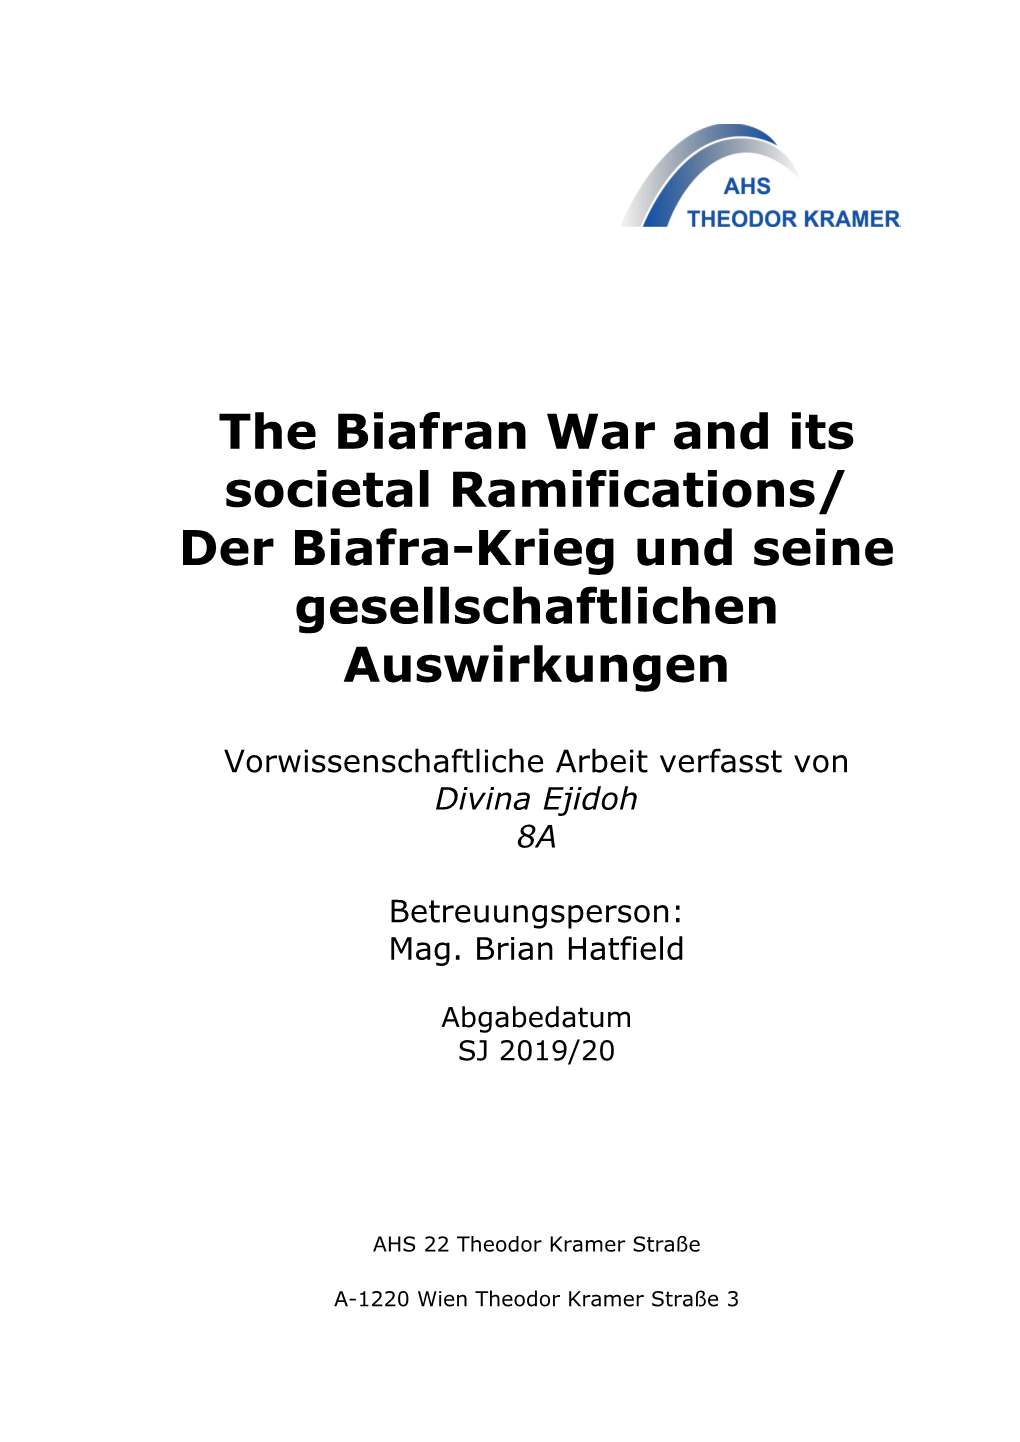 The Biafran War and Its Societal Ramifications/ Der Biafra-Krieg Und Seine Gesellschaftlichen Auswirkungen